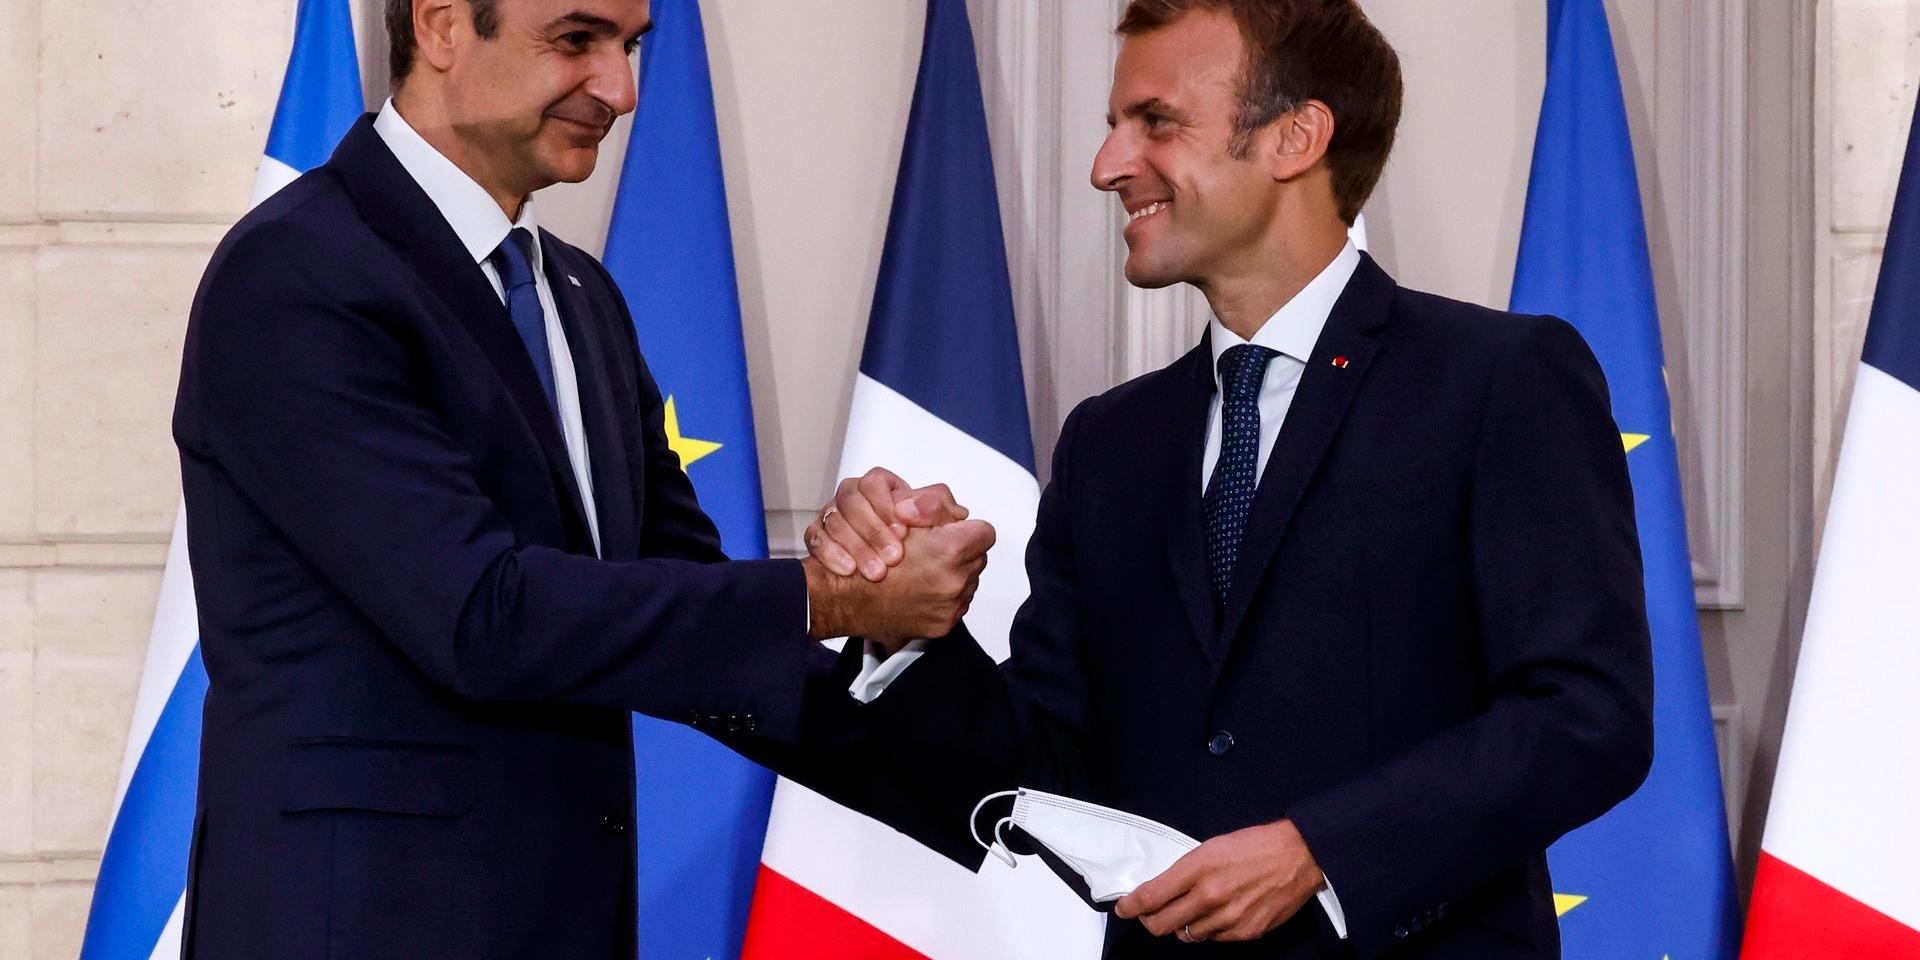 Greklands premiärminister Kyriakos Mitsotakis och Frankrikes president Emmanuel Macron efter att ha signerat kontraktet i Élyséepalatset.